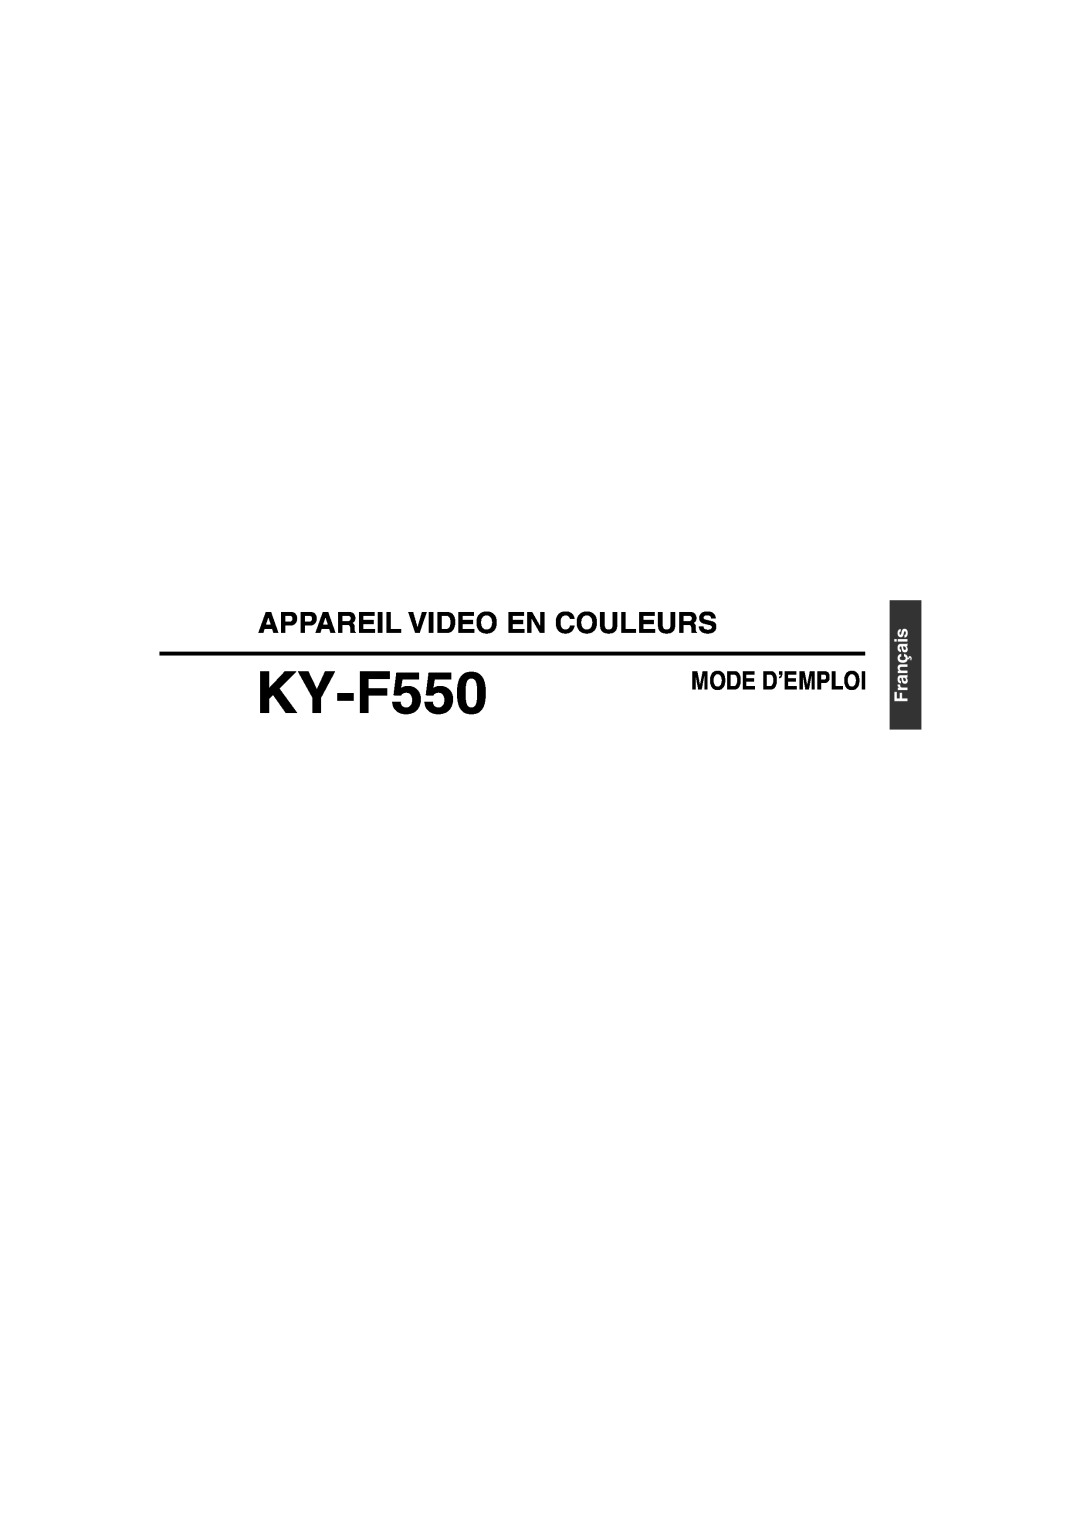 JVC KY-F550E instruction manual Appareil Video En Couleurs, Français, Mode D’Emploi 